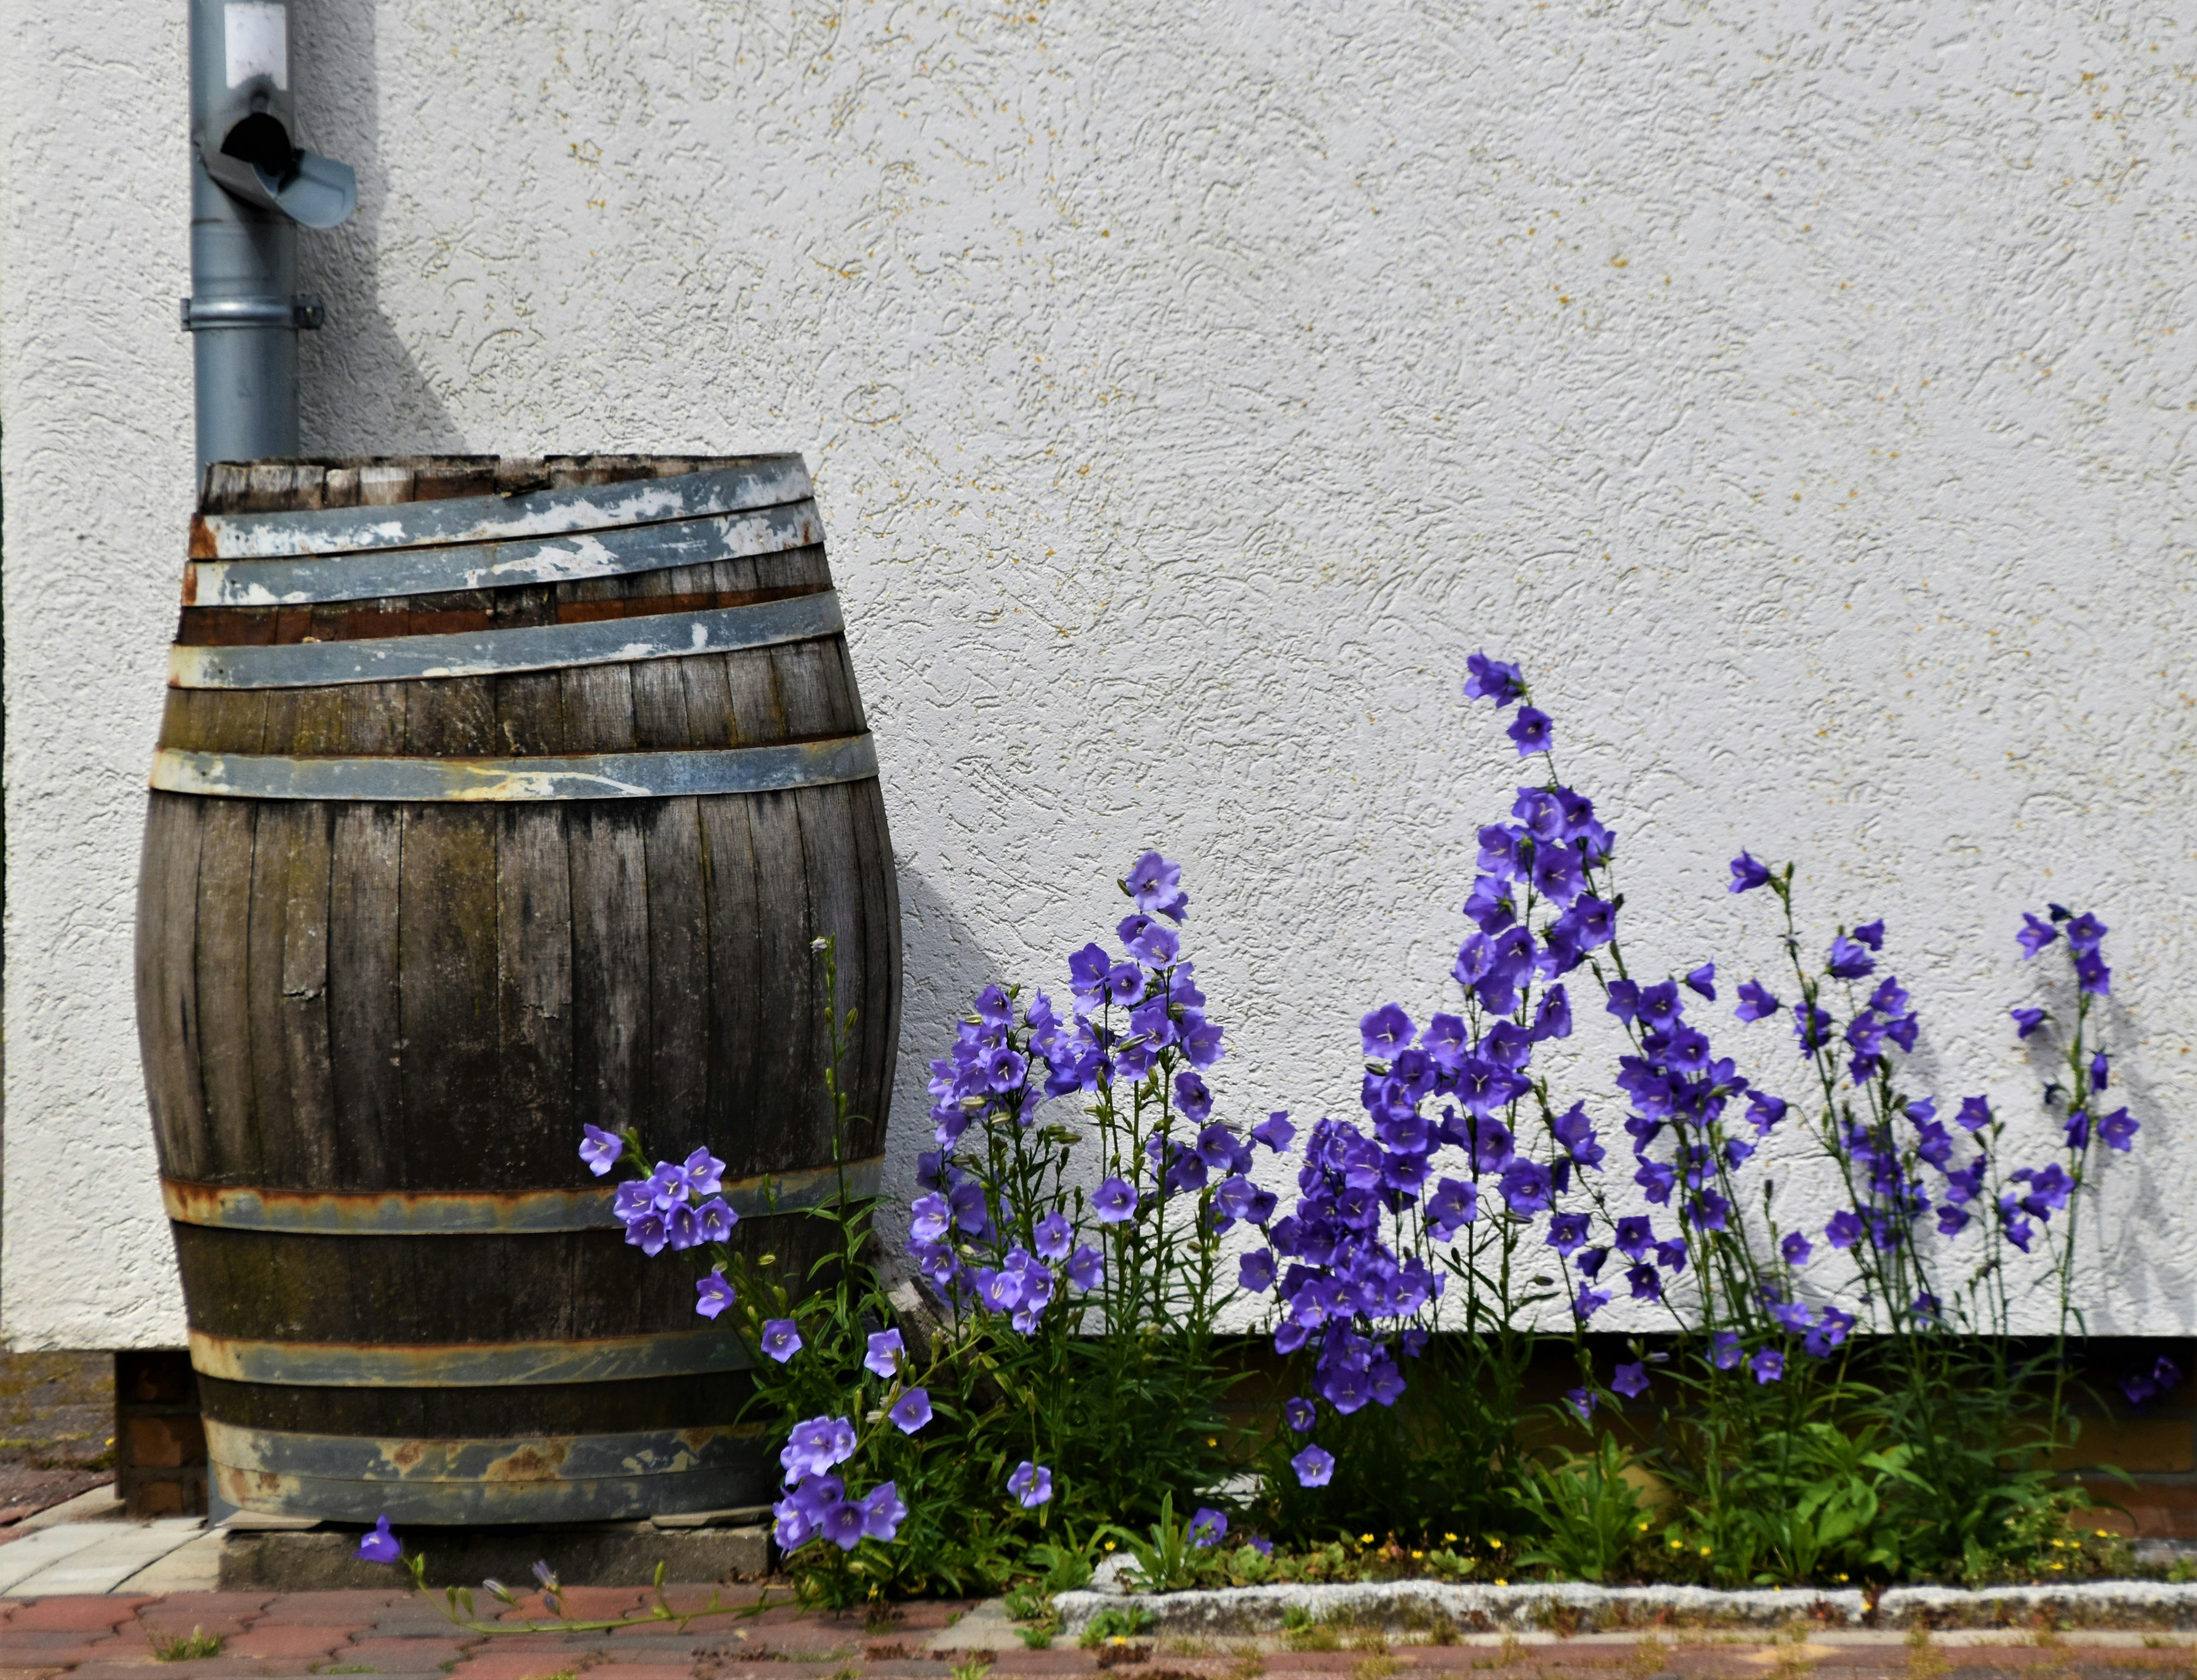 purple flowers on brown wooden barrel